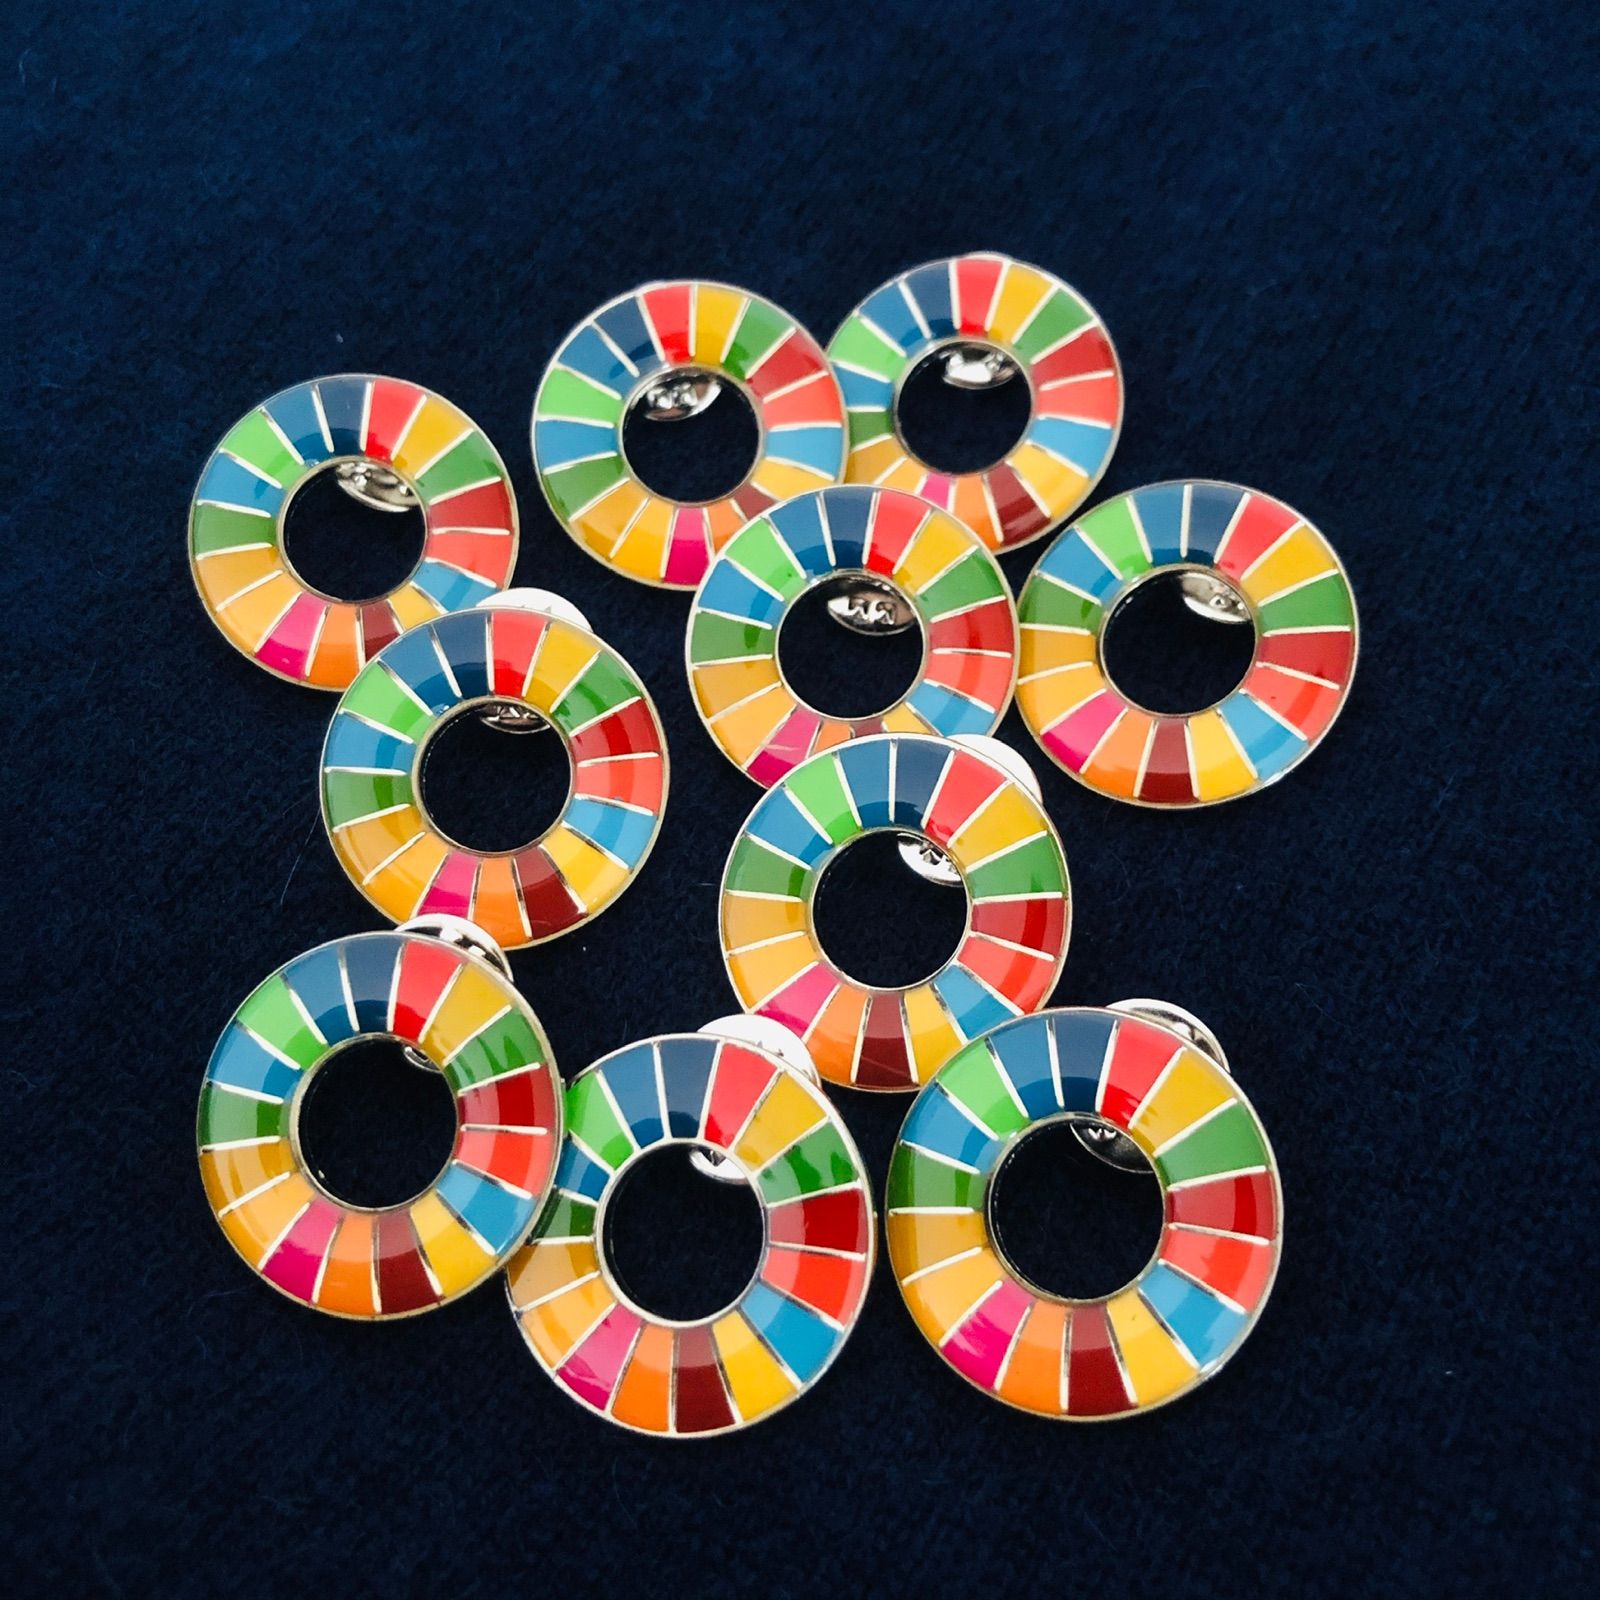 魅了 【数量限定】セット販売 2個セット SDGs ピンバッジ UN